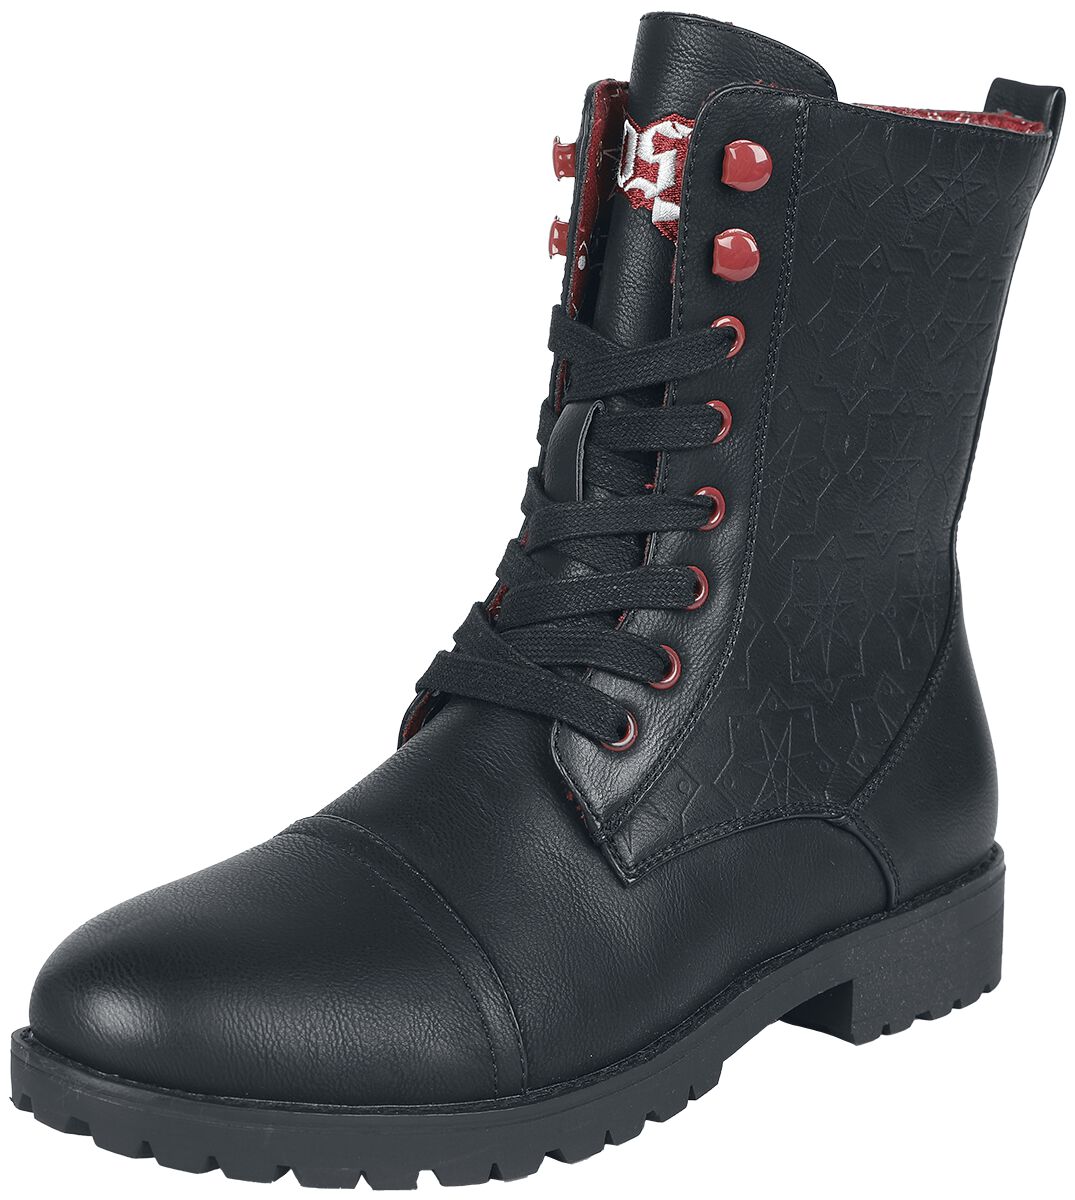 Ghost Boot - EMP Signature Collection - EU37 bis EU42 - für Damen - Größe EU39 - schwarz  - EMP exklusives Merchandise!